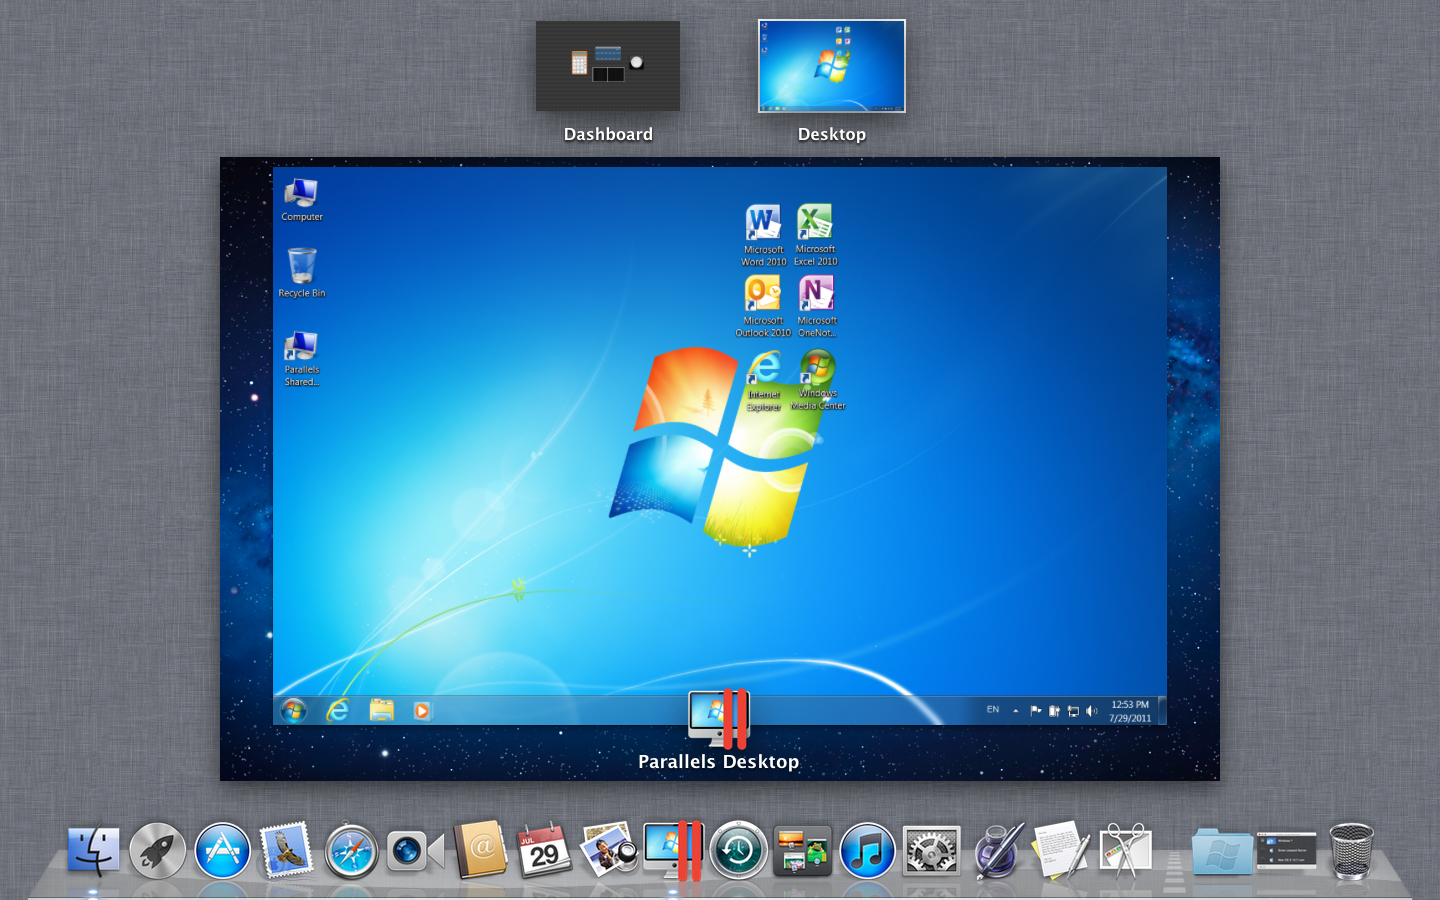 parallels desktop 7 for mac crack